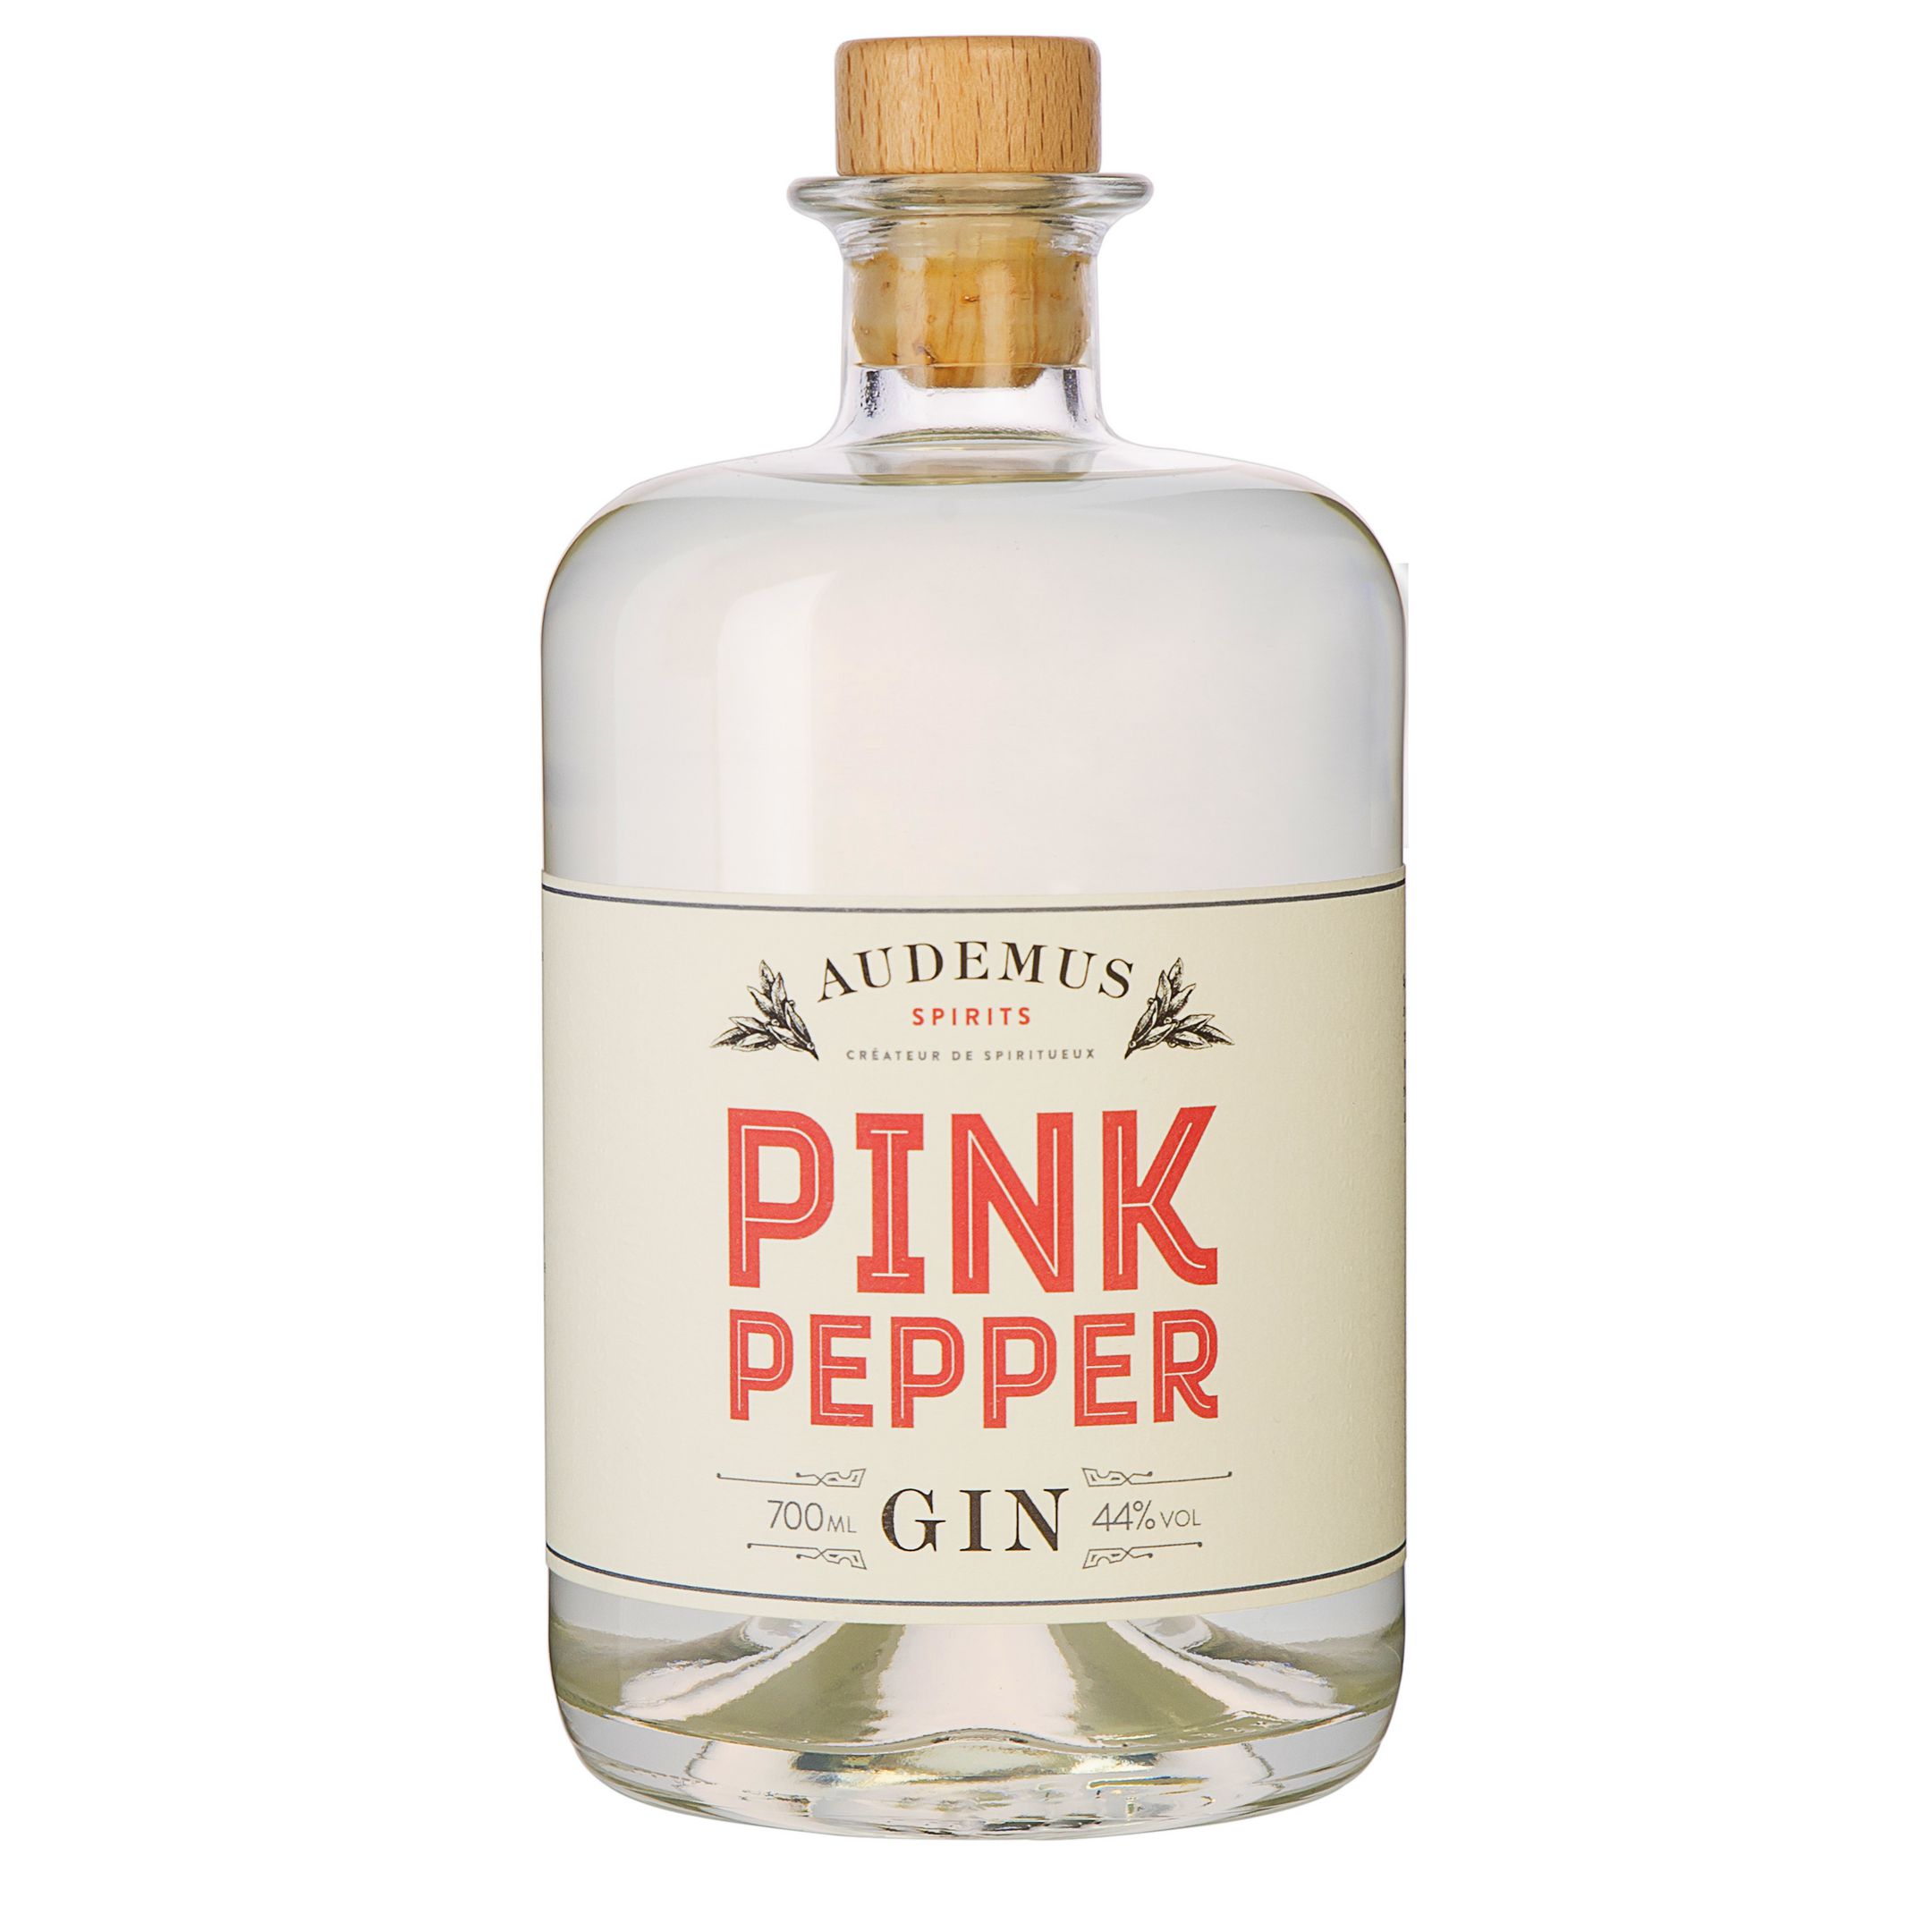 Pink Pepper Gin - Audemus Spirits